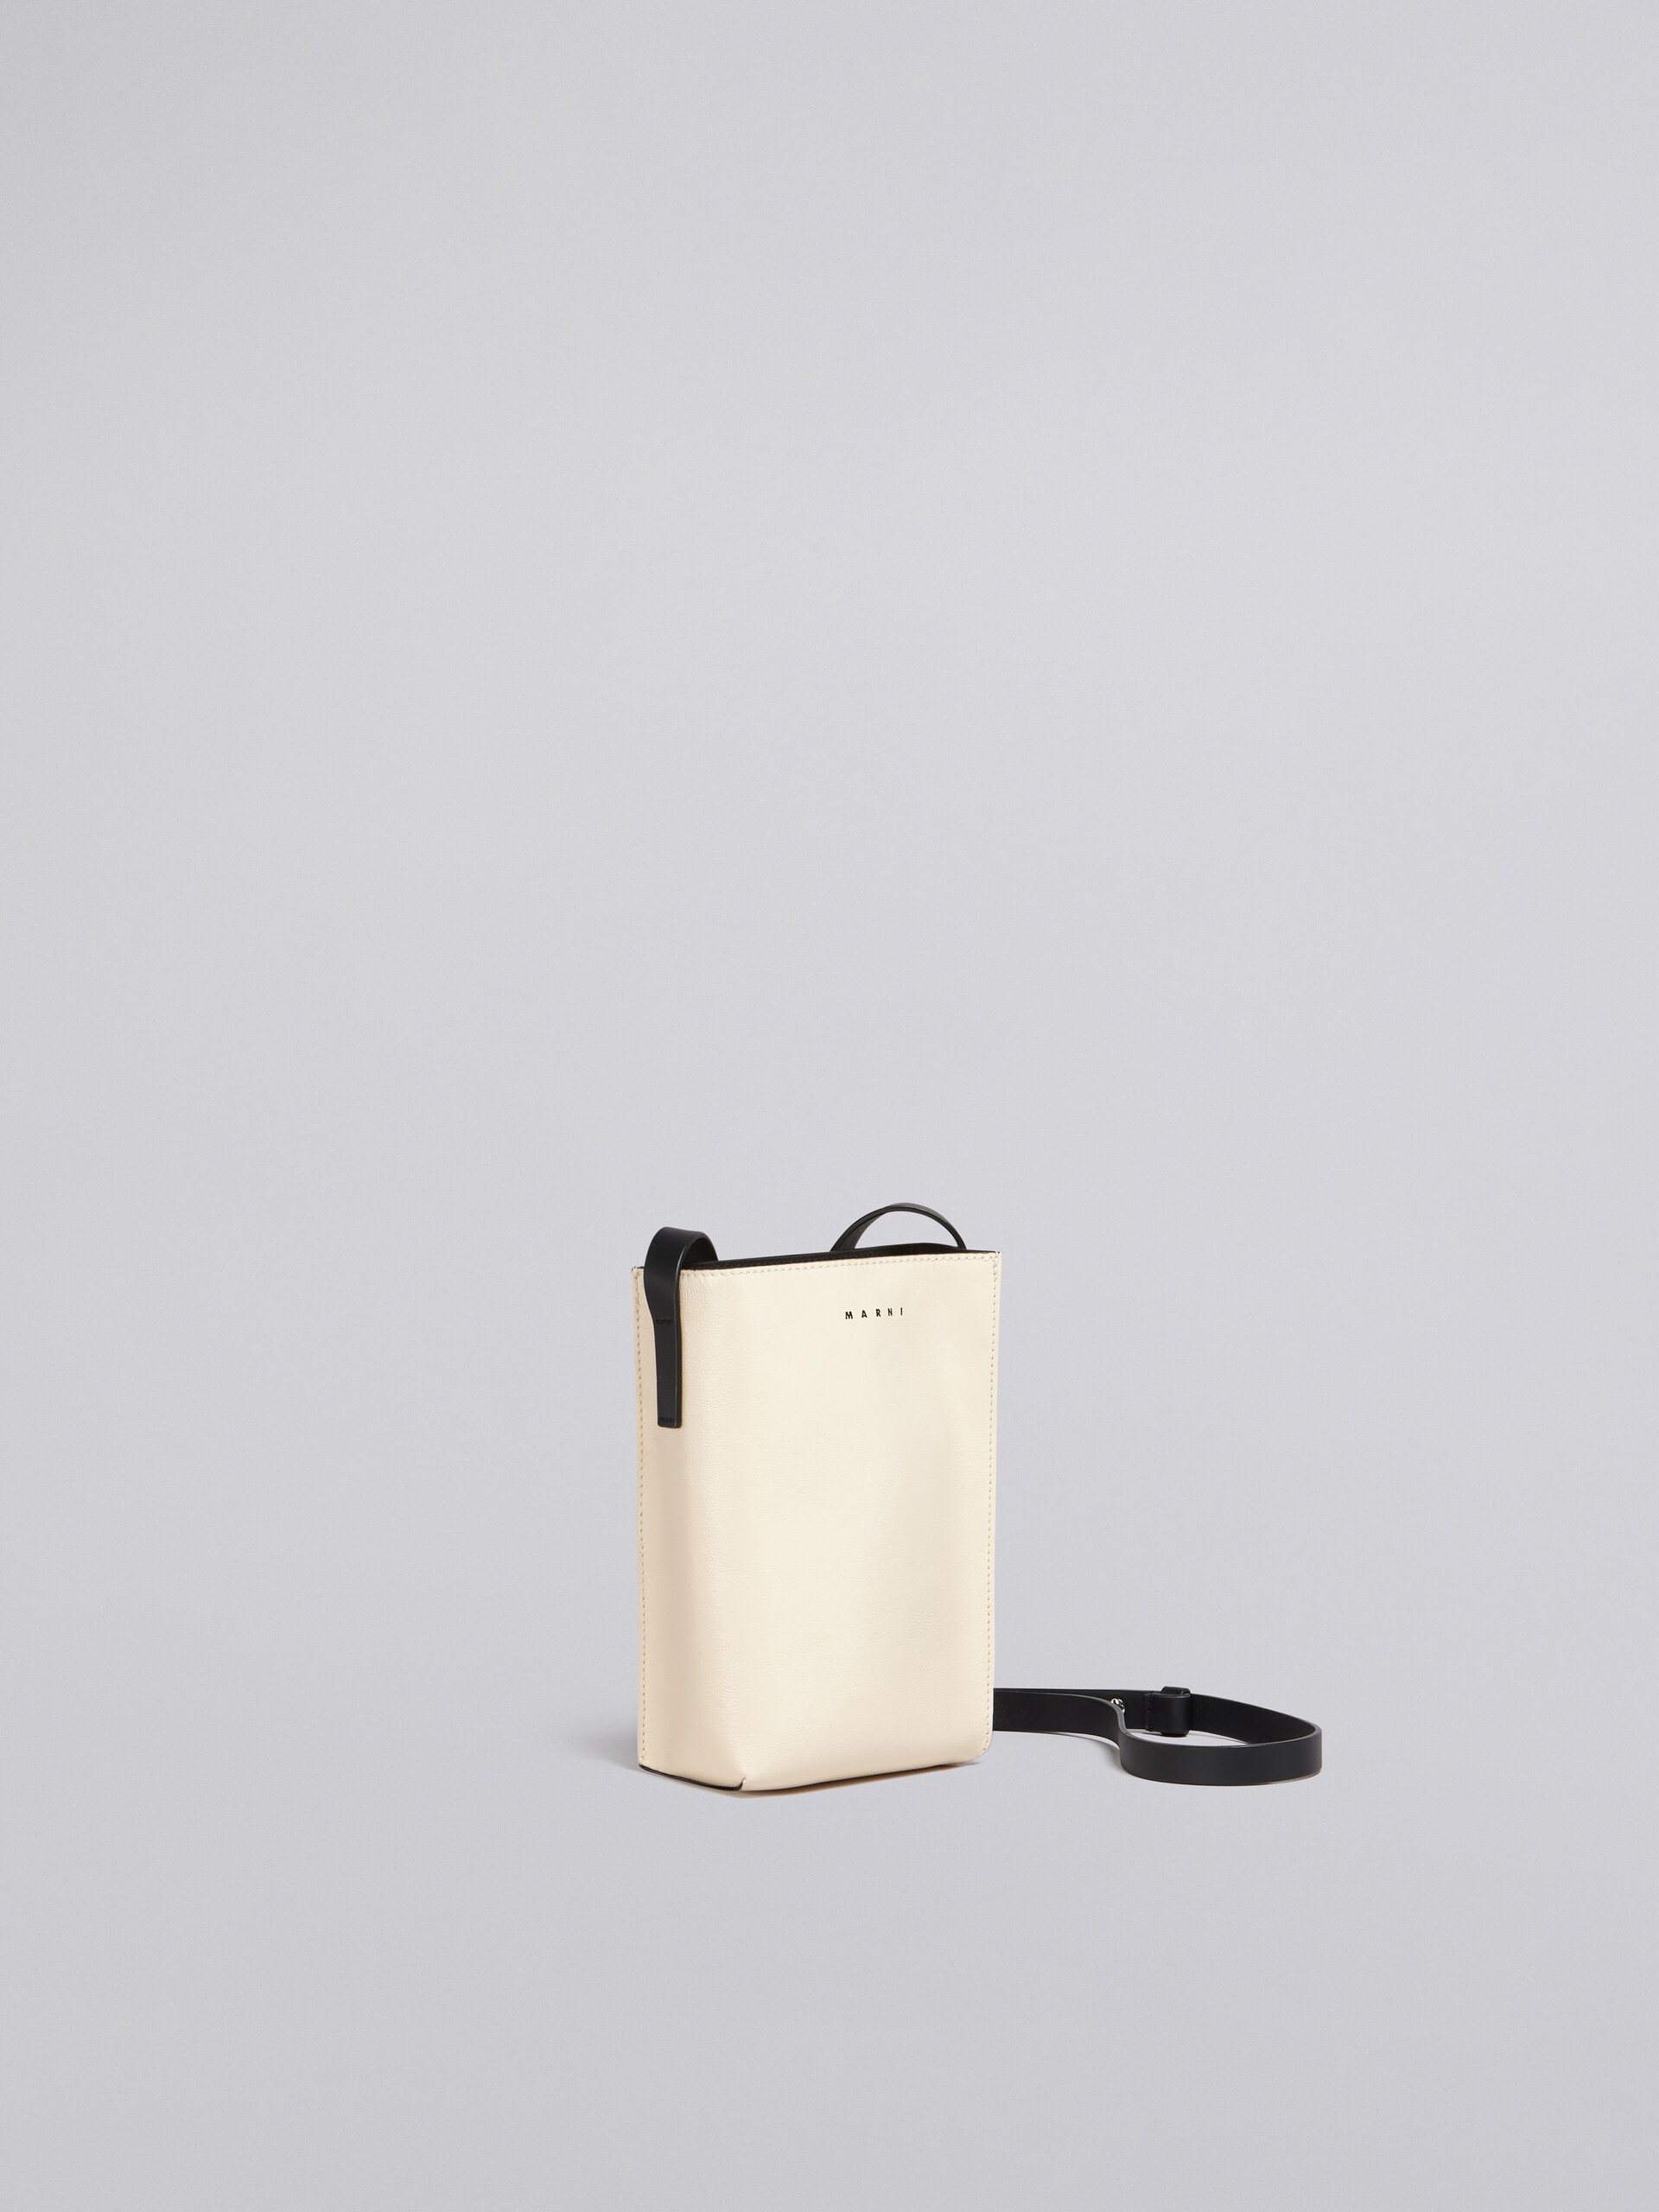 MUSEO SOFT bag piccola in pelle lucida bianca e marrone - Borse a spalla - Image 5